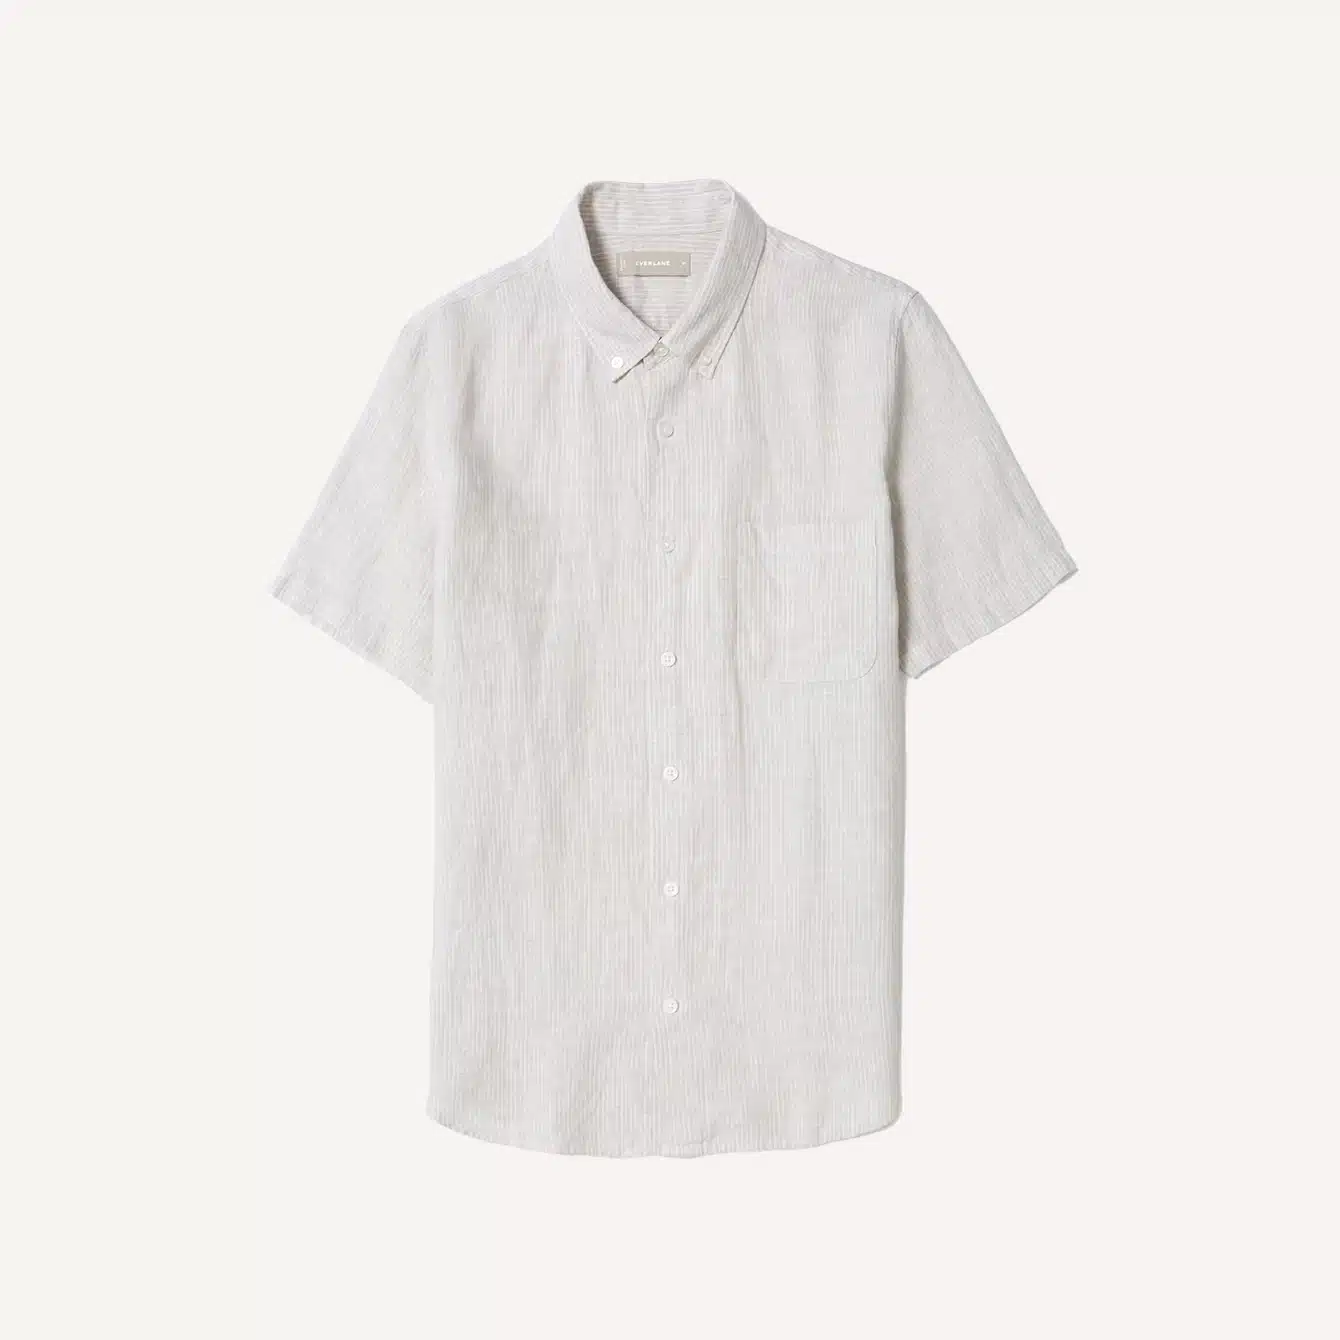 Everlane Linen Short Sleeve Standard Fit Shirt